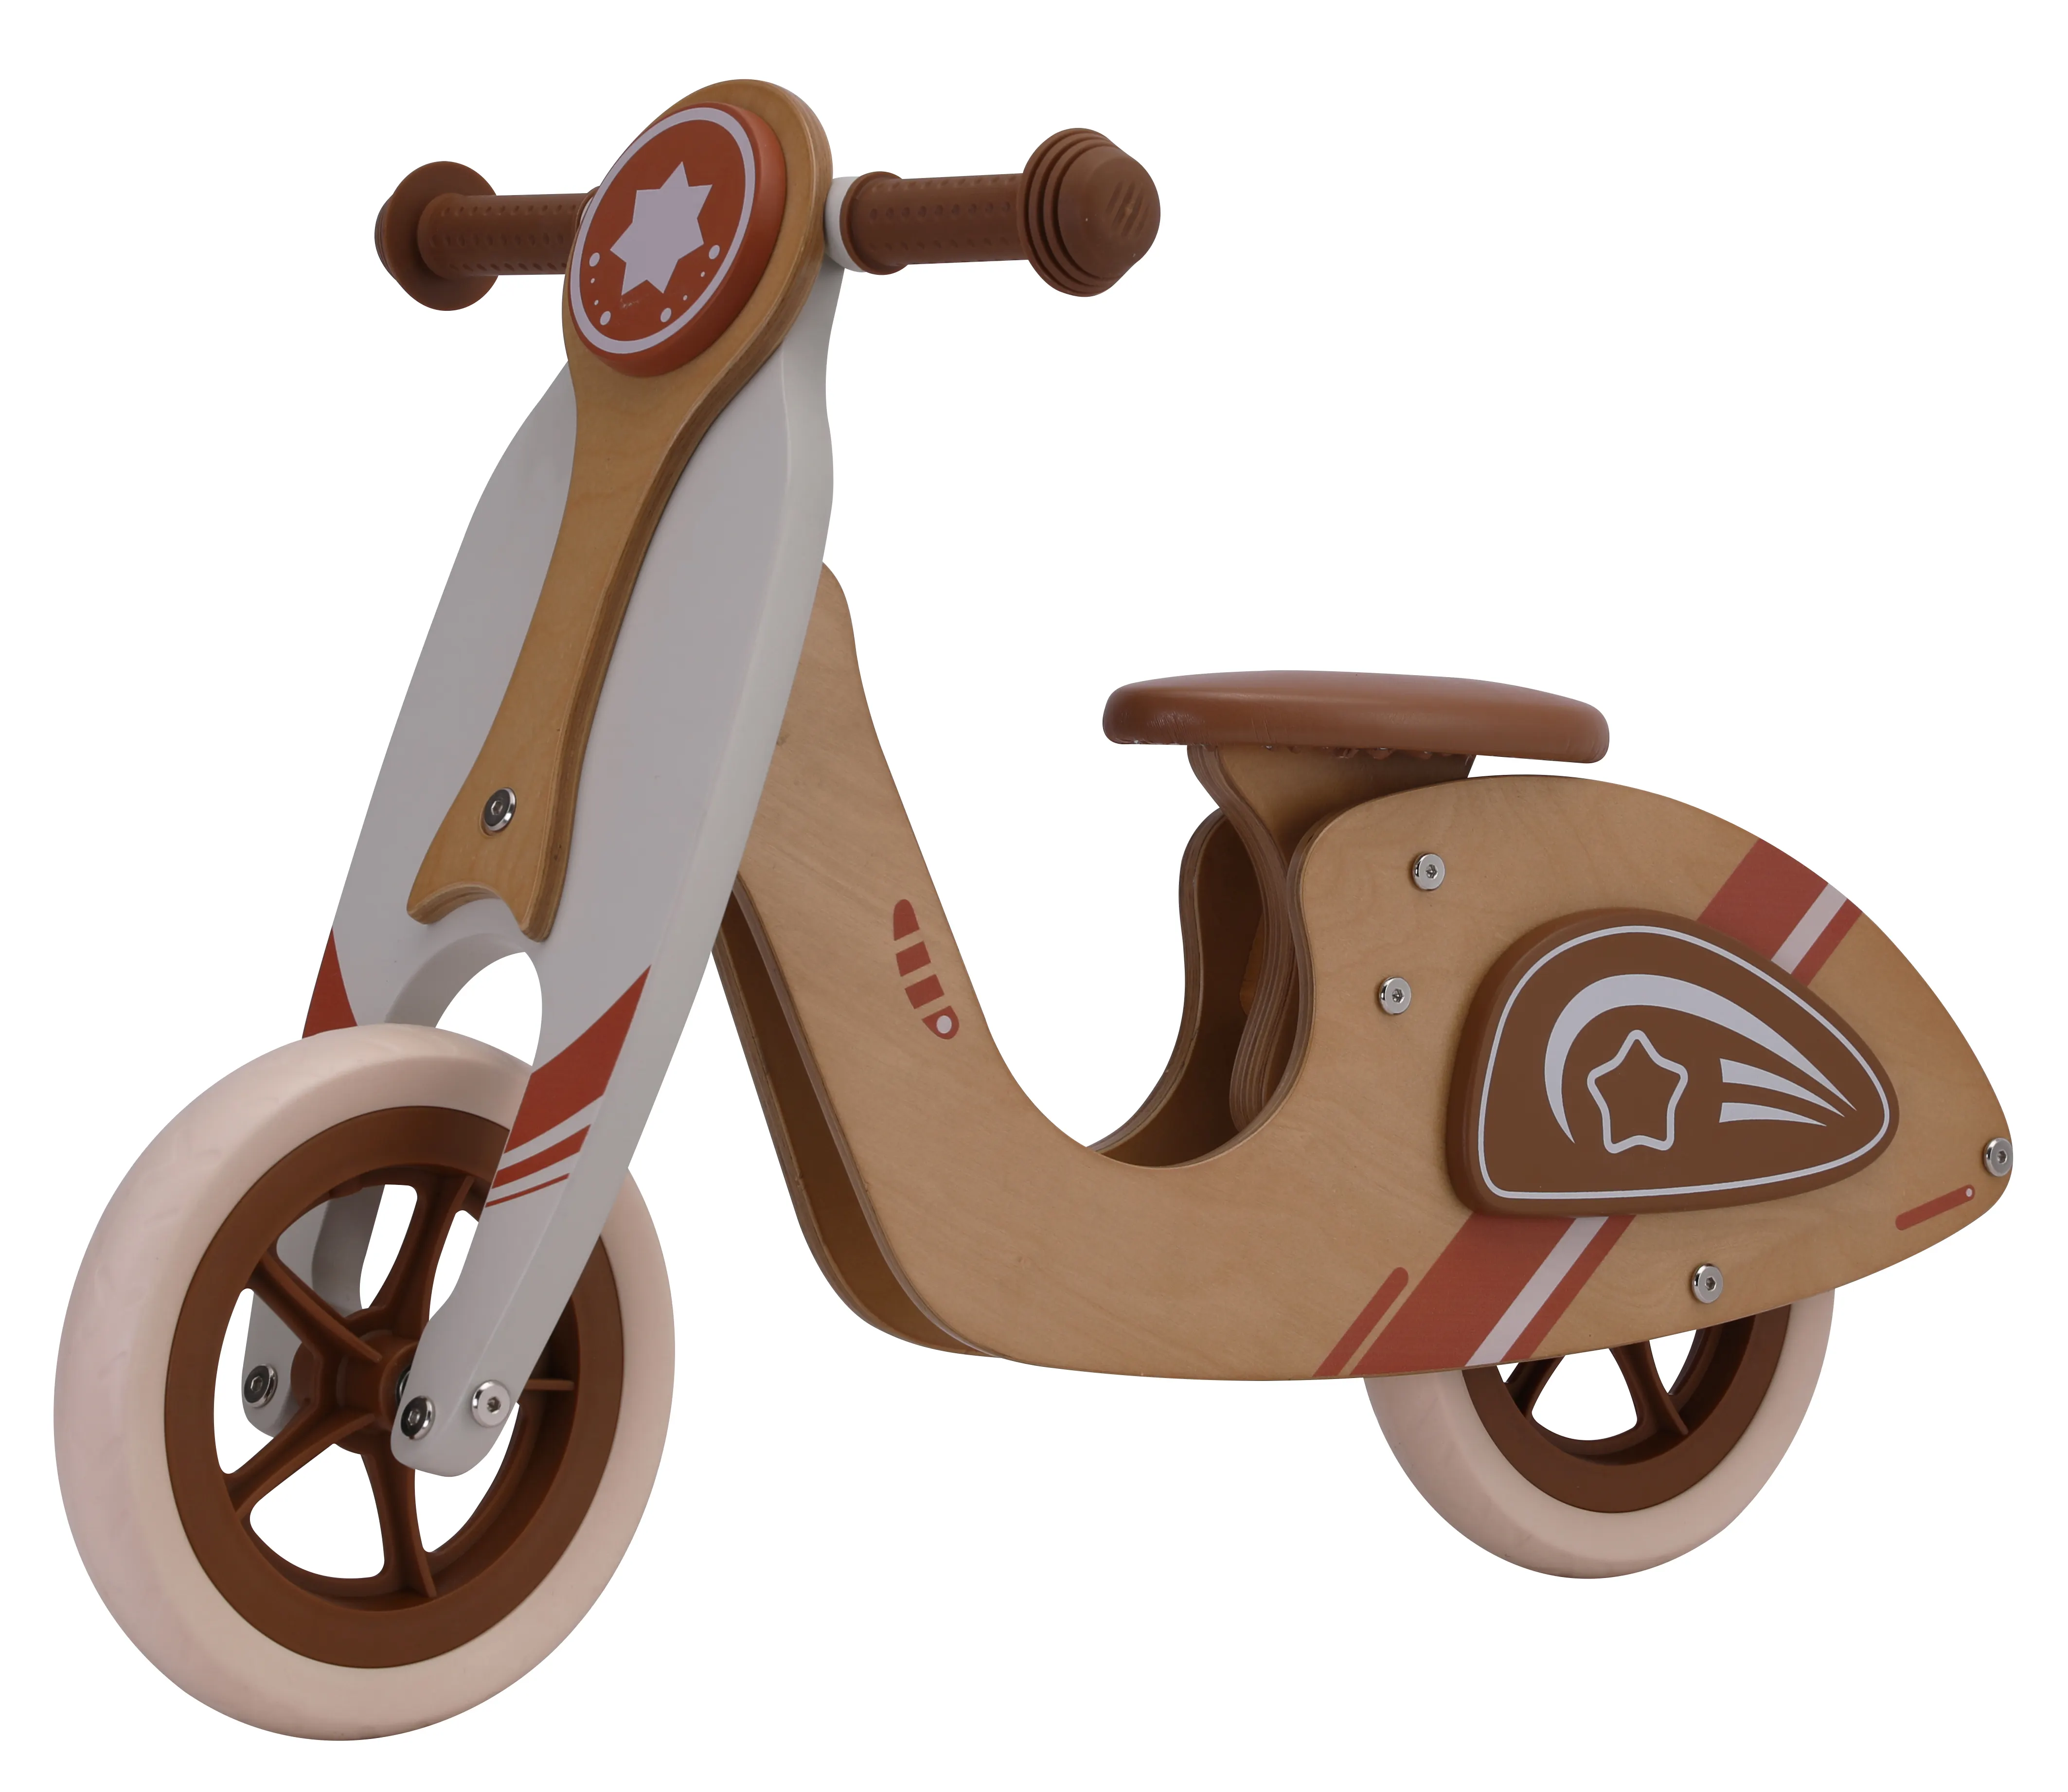 سكوتر خشبي 10 بوصة، دراجة فيسبا خشبية للتوازن، دراجة خشبية